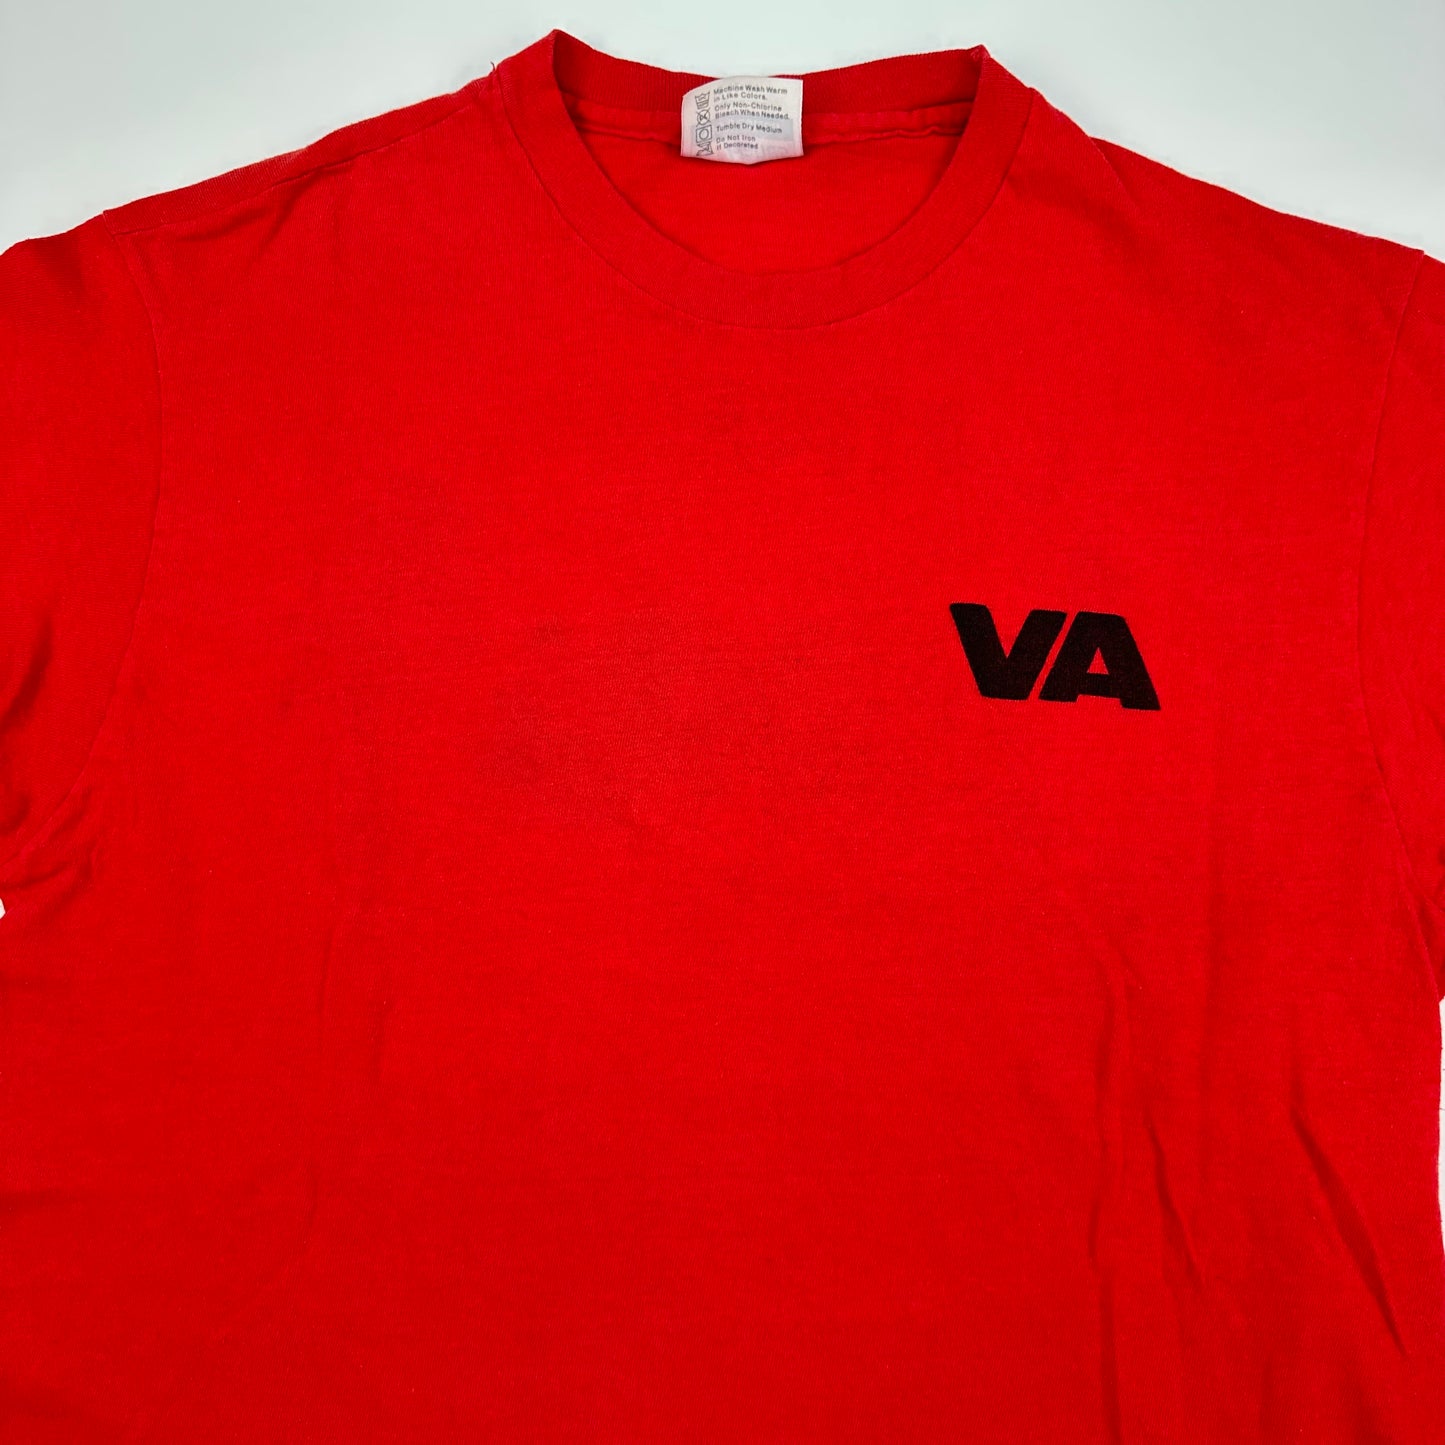 Vintage 80s Verbal Assault Shirt Large